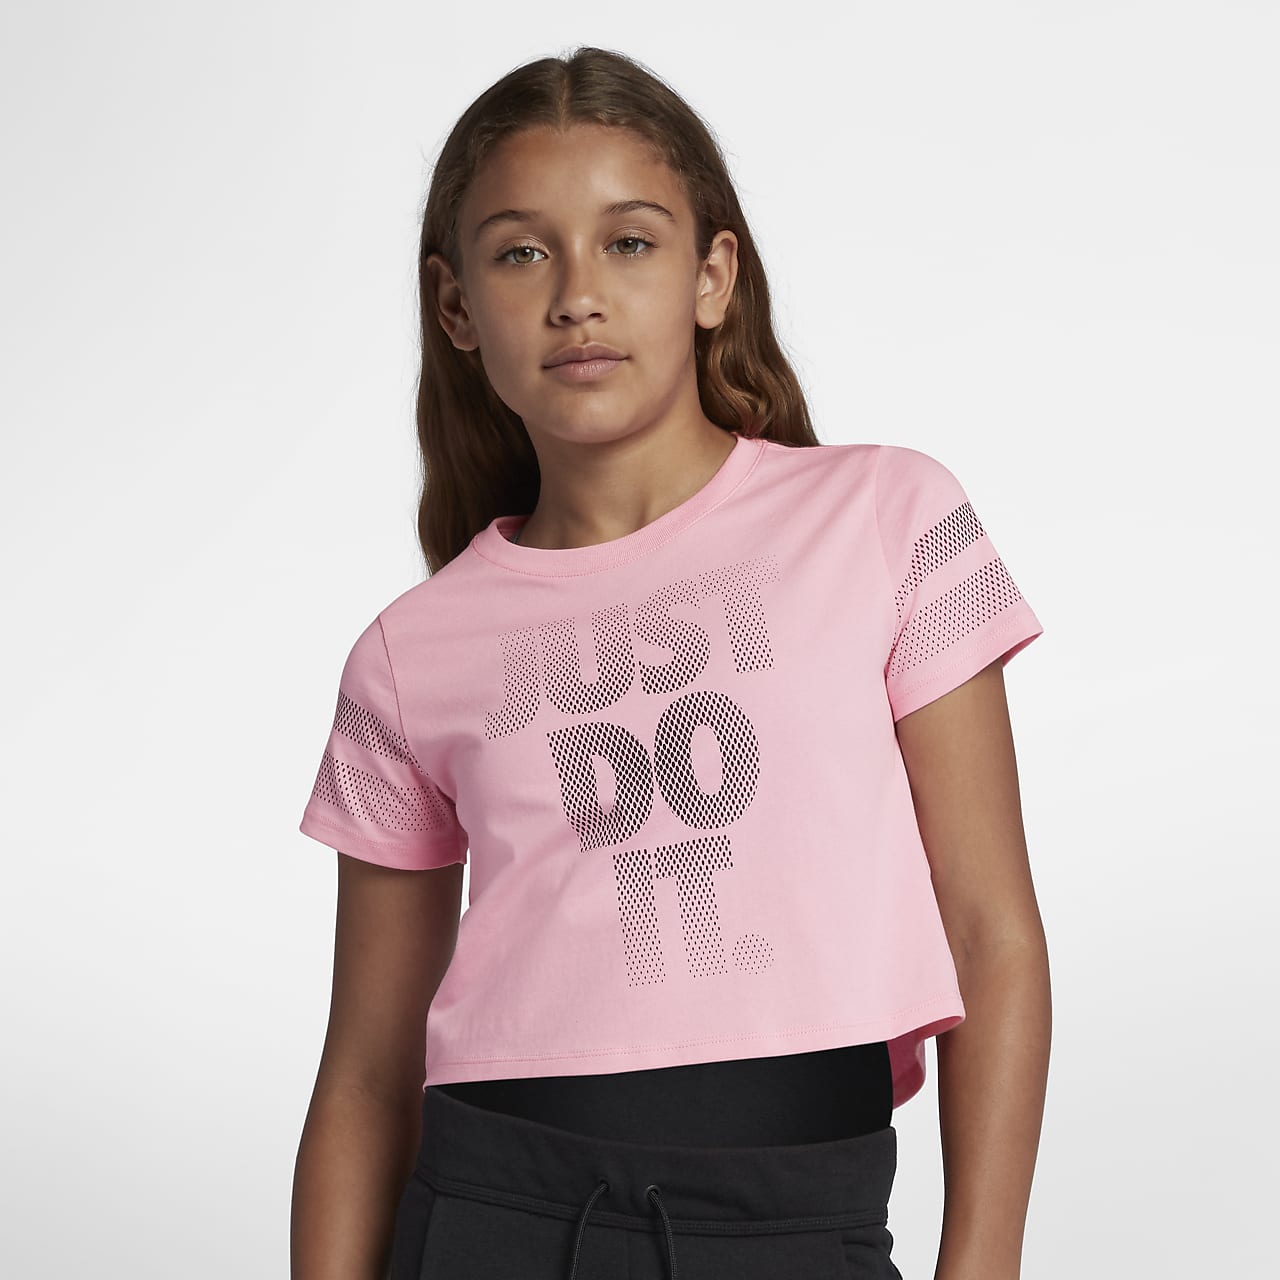 Топики для девочек 12 лет для лета. Nike Sportswear футболка укороченная NSW. Короткая футболка для девочки. Укороченная футболка для девочек. Майка для девочки.